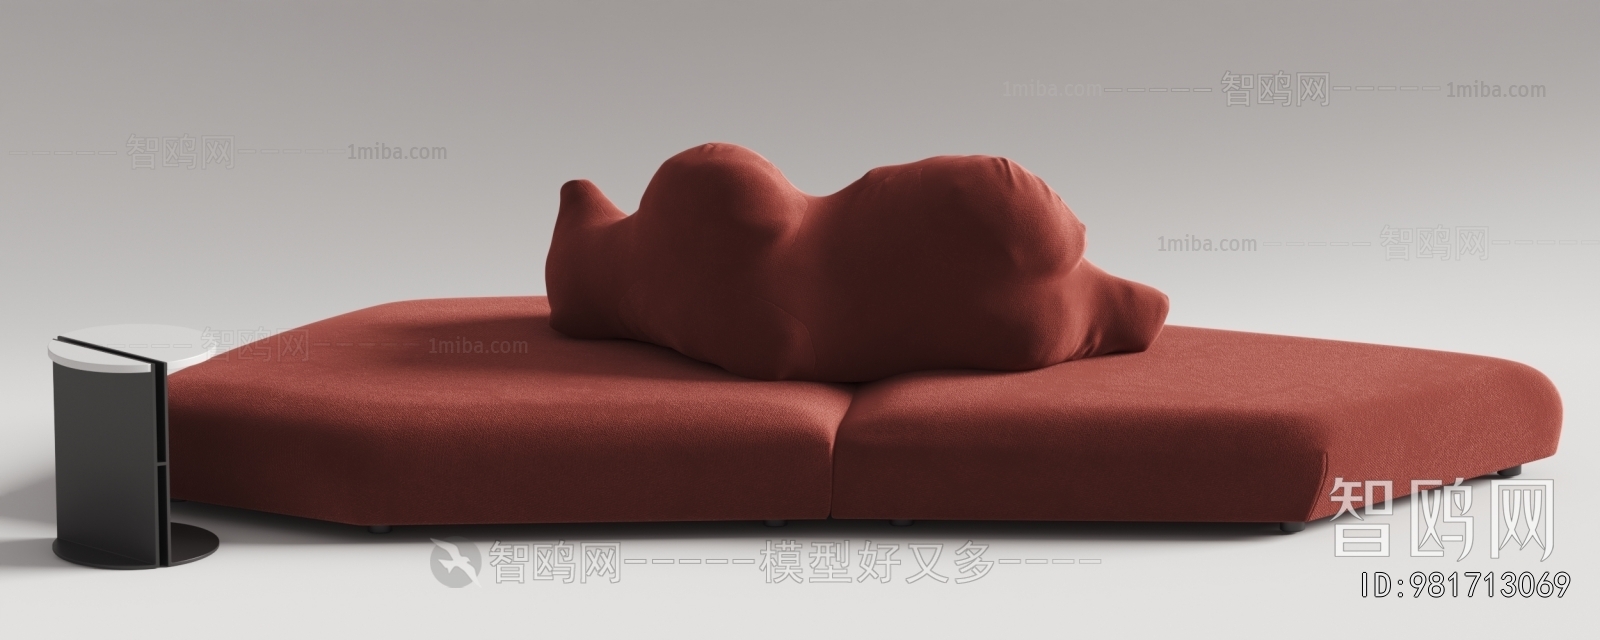 RocheBobois现代创意异形沙发